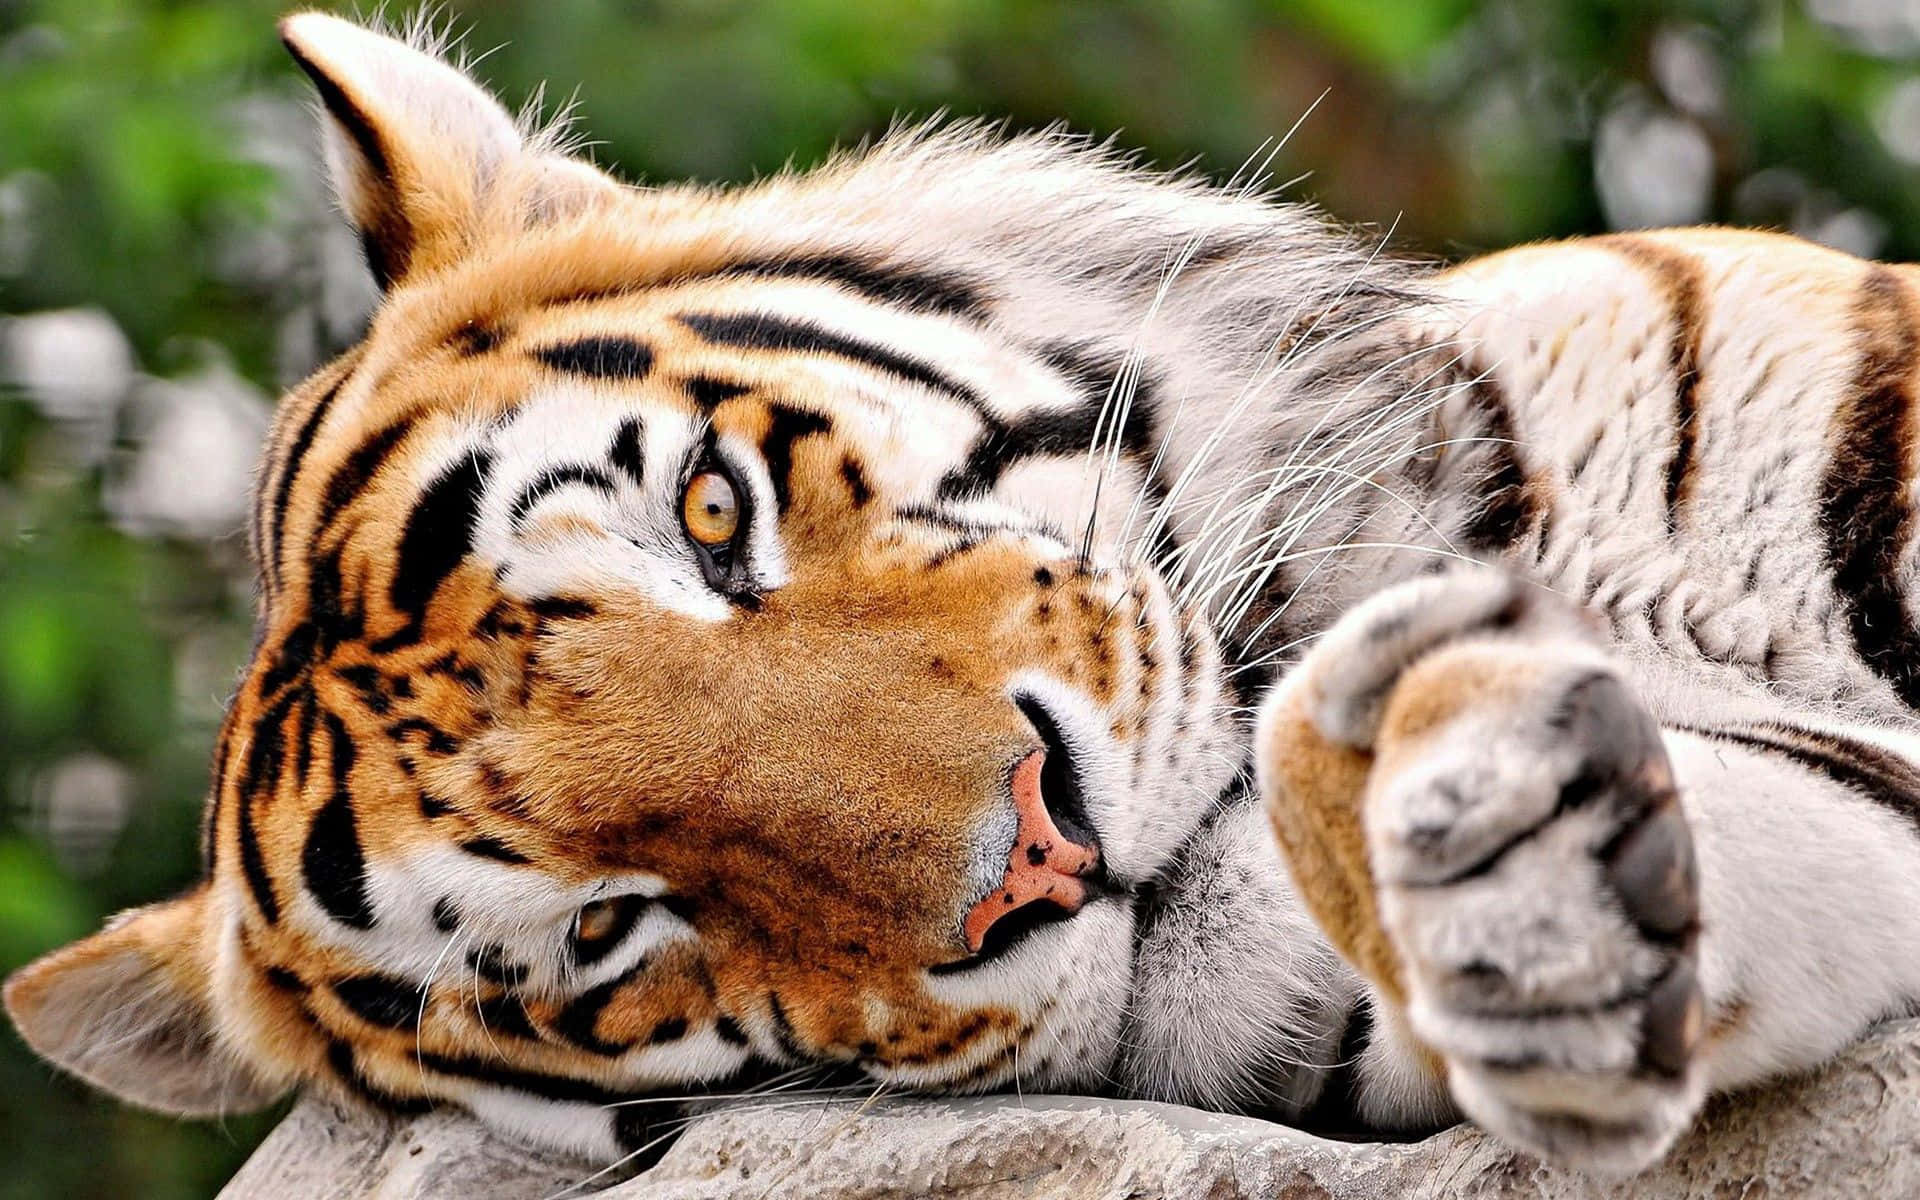 Tiger1920 X 1200 Hintergrund.